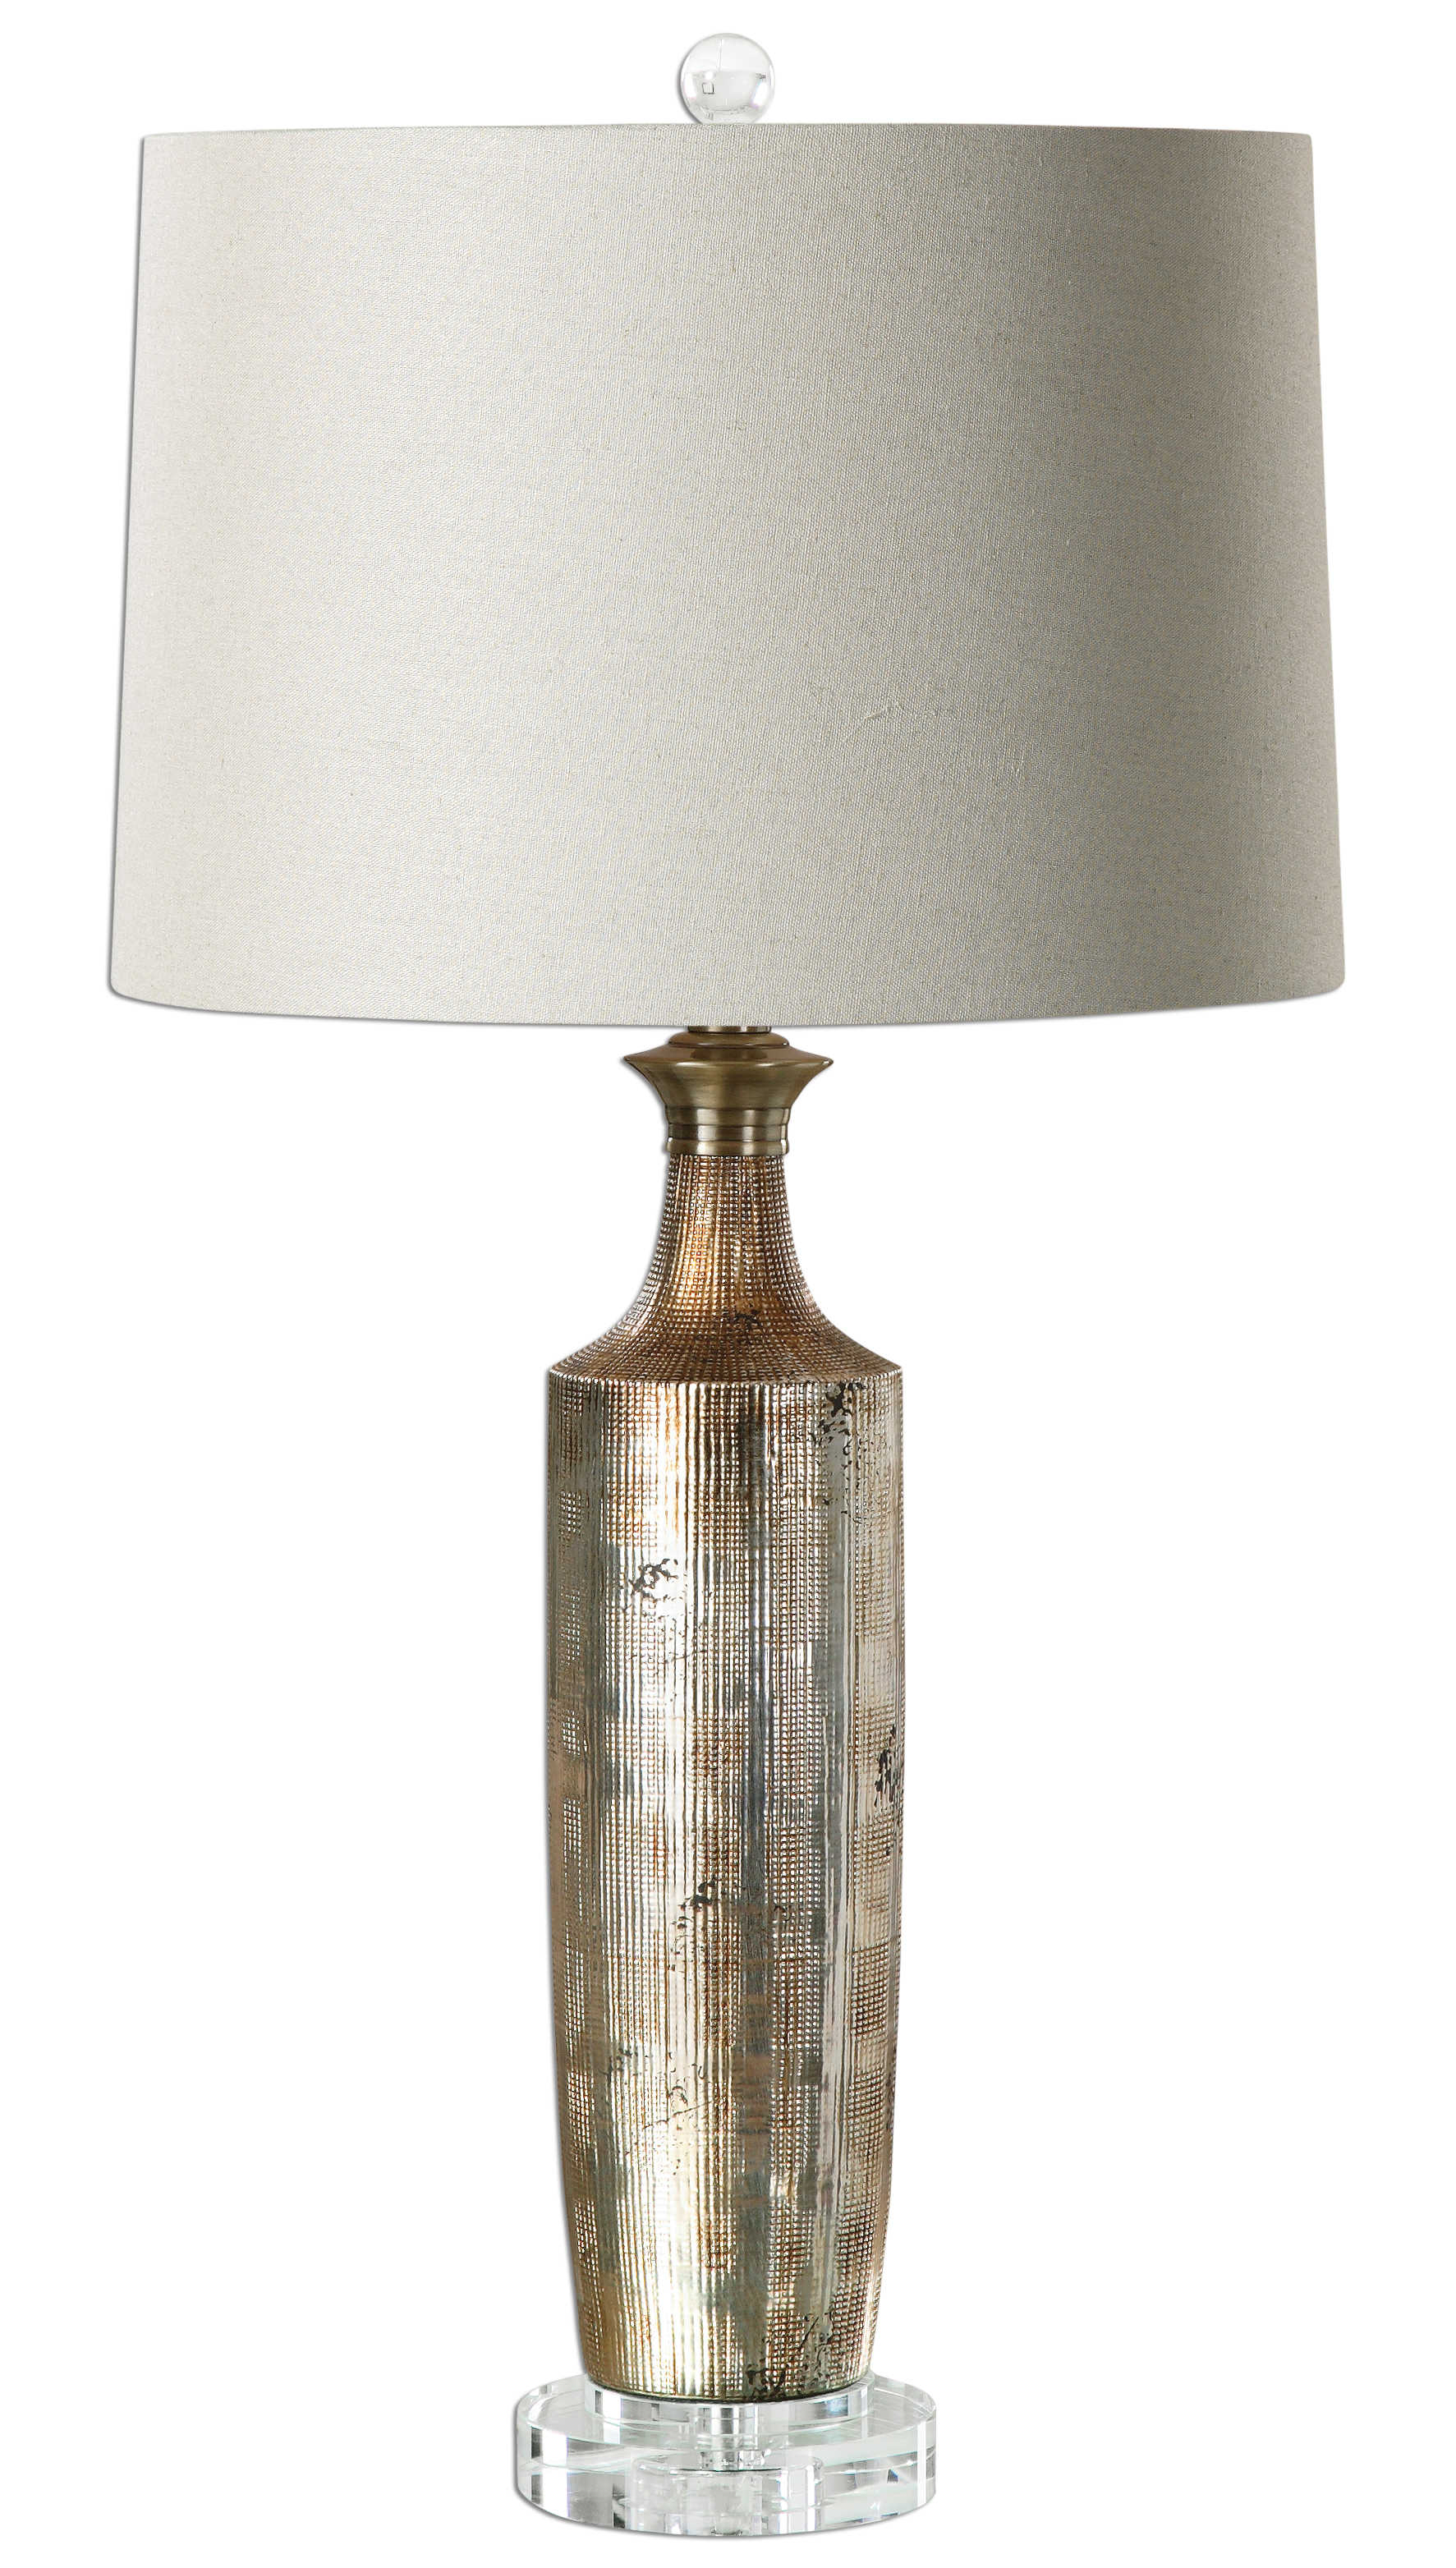 Настольная лампа VALDIERI TABLE LAMP 27094-1 Uttermost США